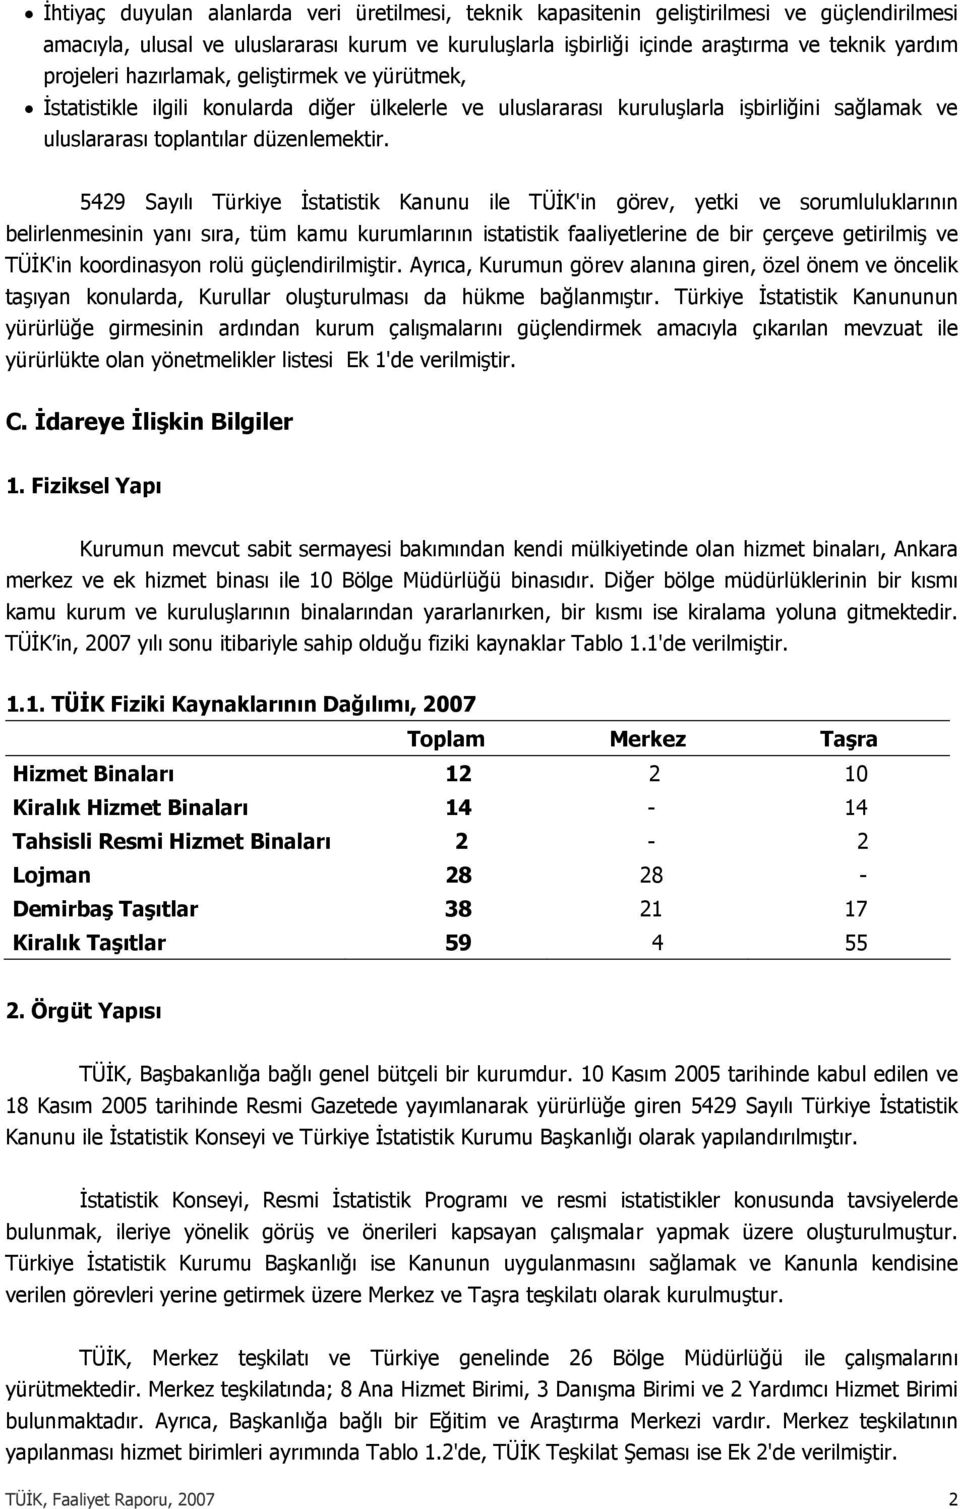 5429 Sayılı Türkiye İstatistik Kanunu ile TÜİK'in görev, yetki ve sorumluluklarının belirlenmesinin yanı sıra, tüm kamu kurumlarının istatistik faaliyetlerine de bir çerçeve getirilmiş ve TÜİK'in